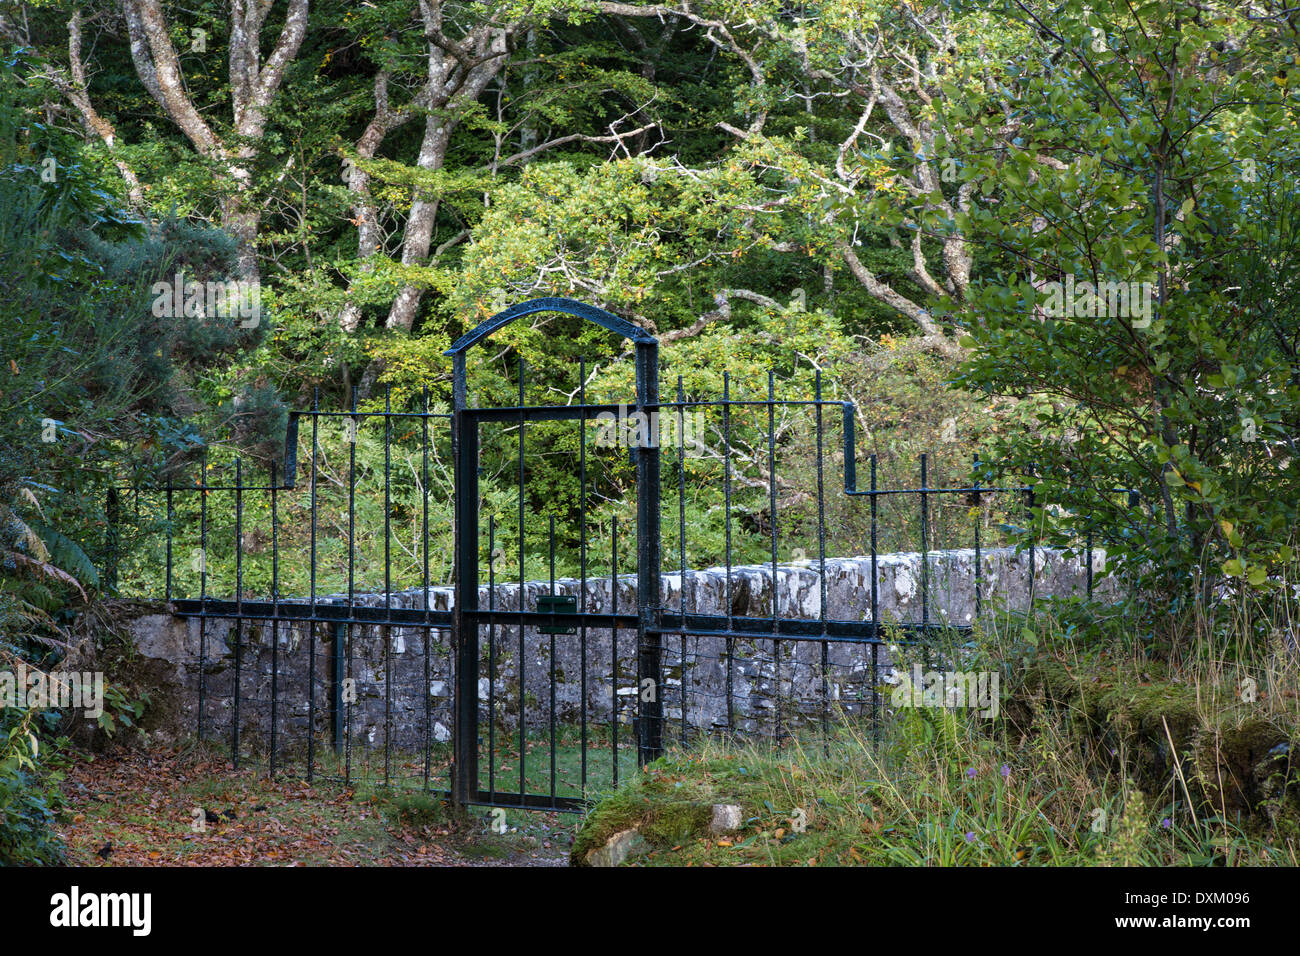 Iron gate in forest, Ardnmurchan, Scotland Stock Photo